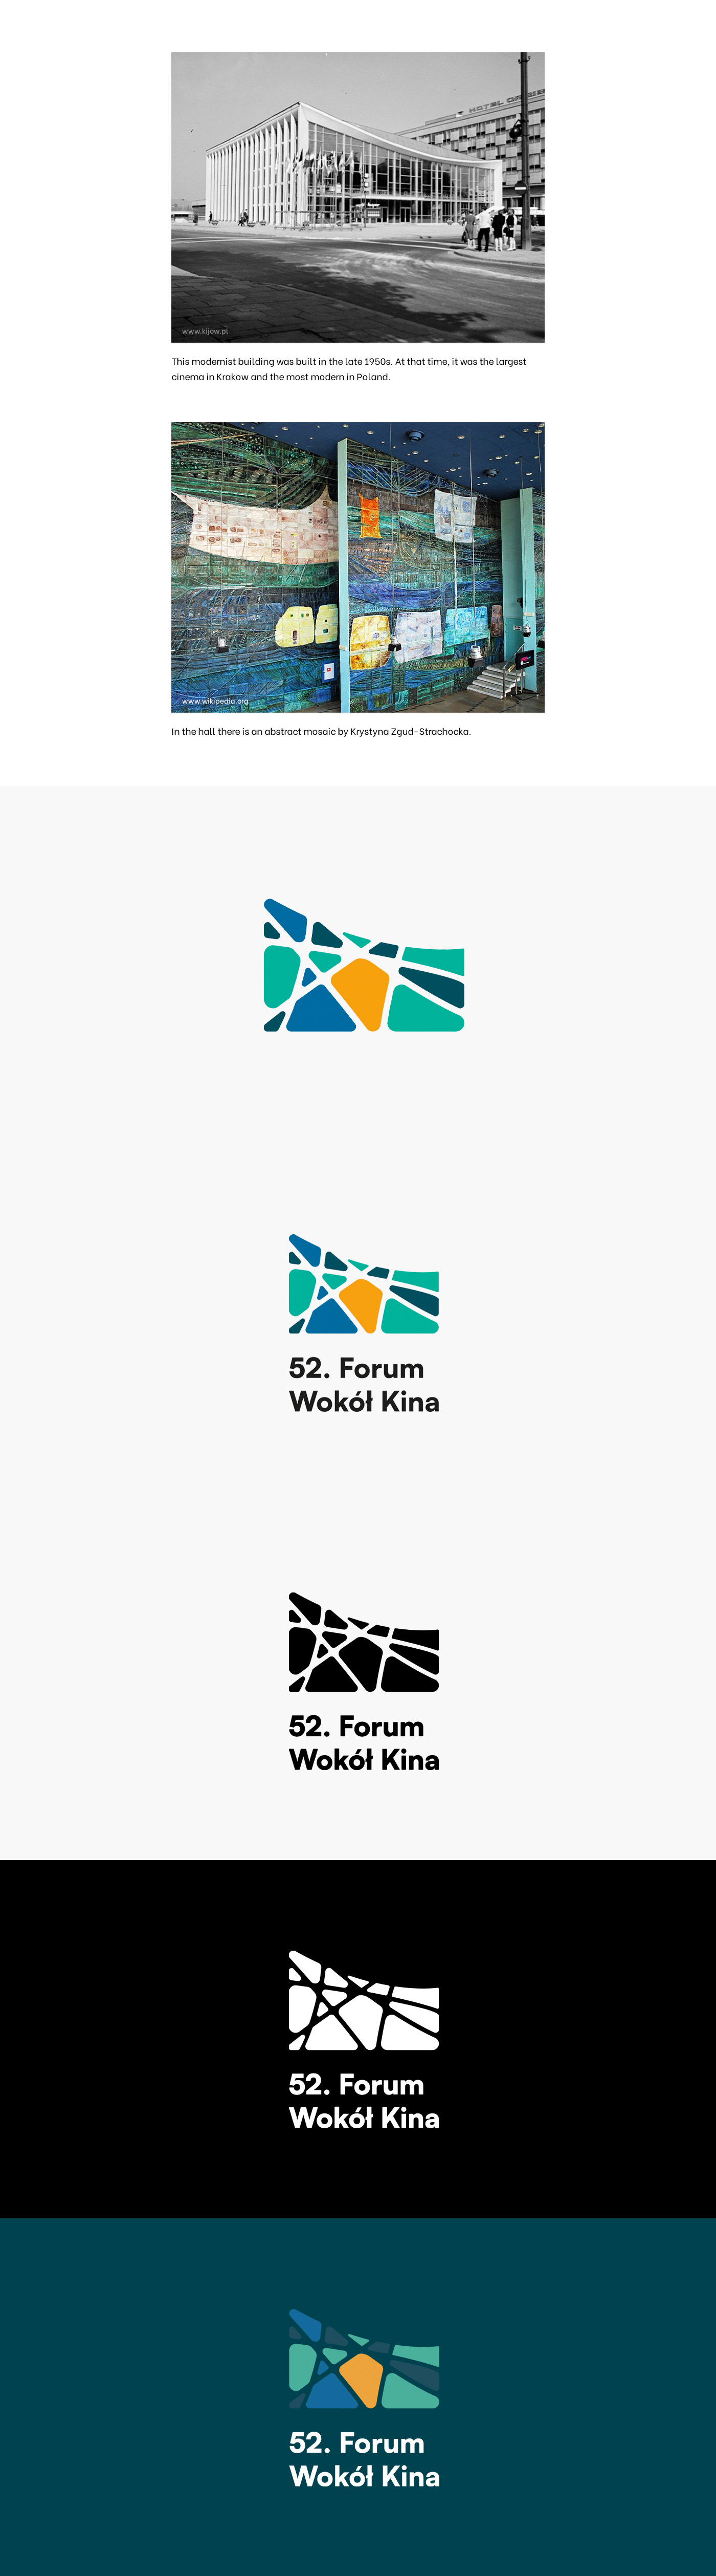 Cinema krakow logo visual identity brand identity Logo Design Logotype identity